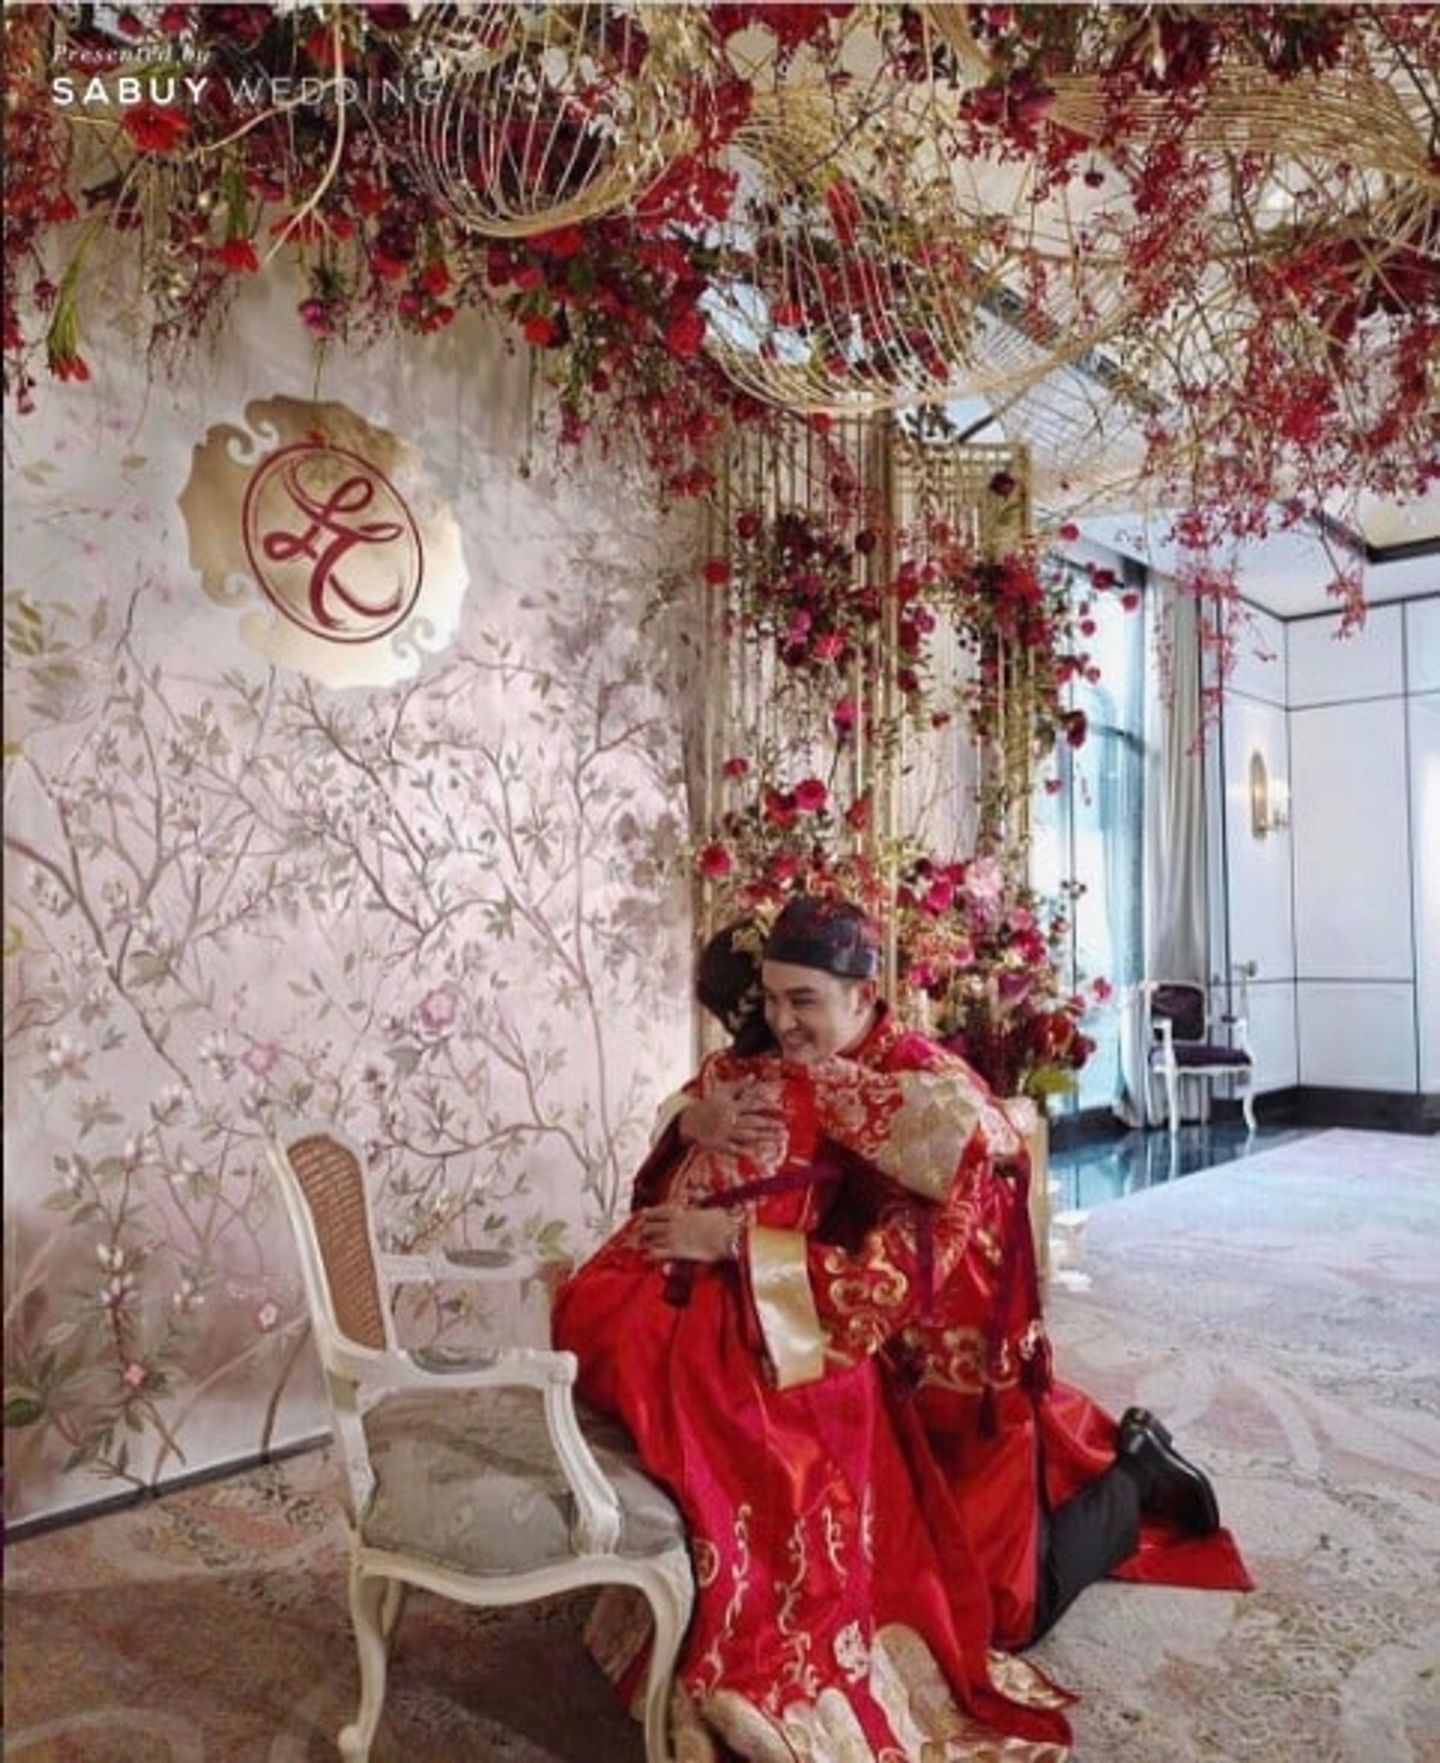 บ่าวสาว,backdrop งานแต่ง,จัดดอกไม้งานแต่ง,งานแต่งดารา พิธียกน้ำชาจีนโบราณ งดงามอลังการ งานแต่ง เตชินท์ จิรัฐชัยและหลิน ลลิดา